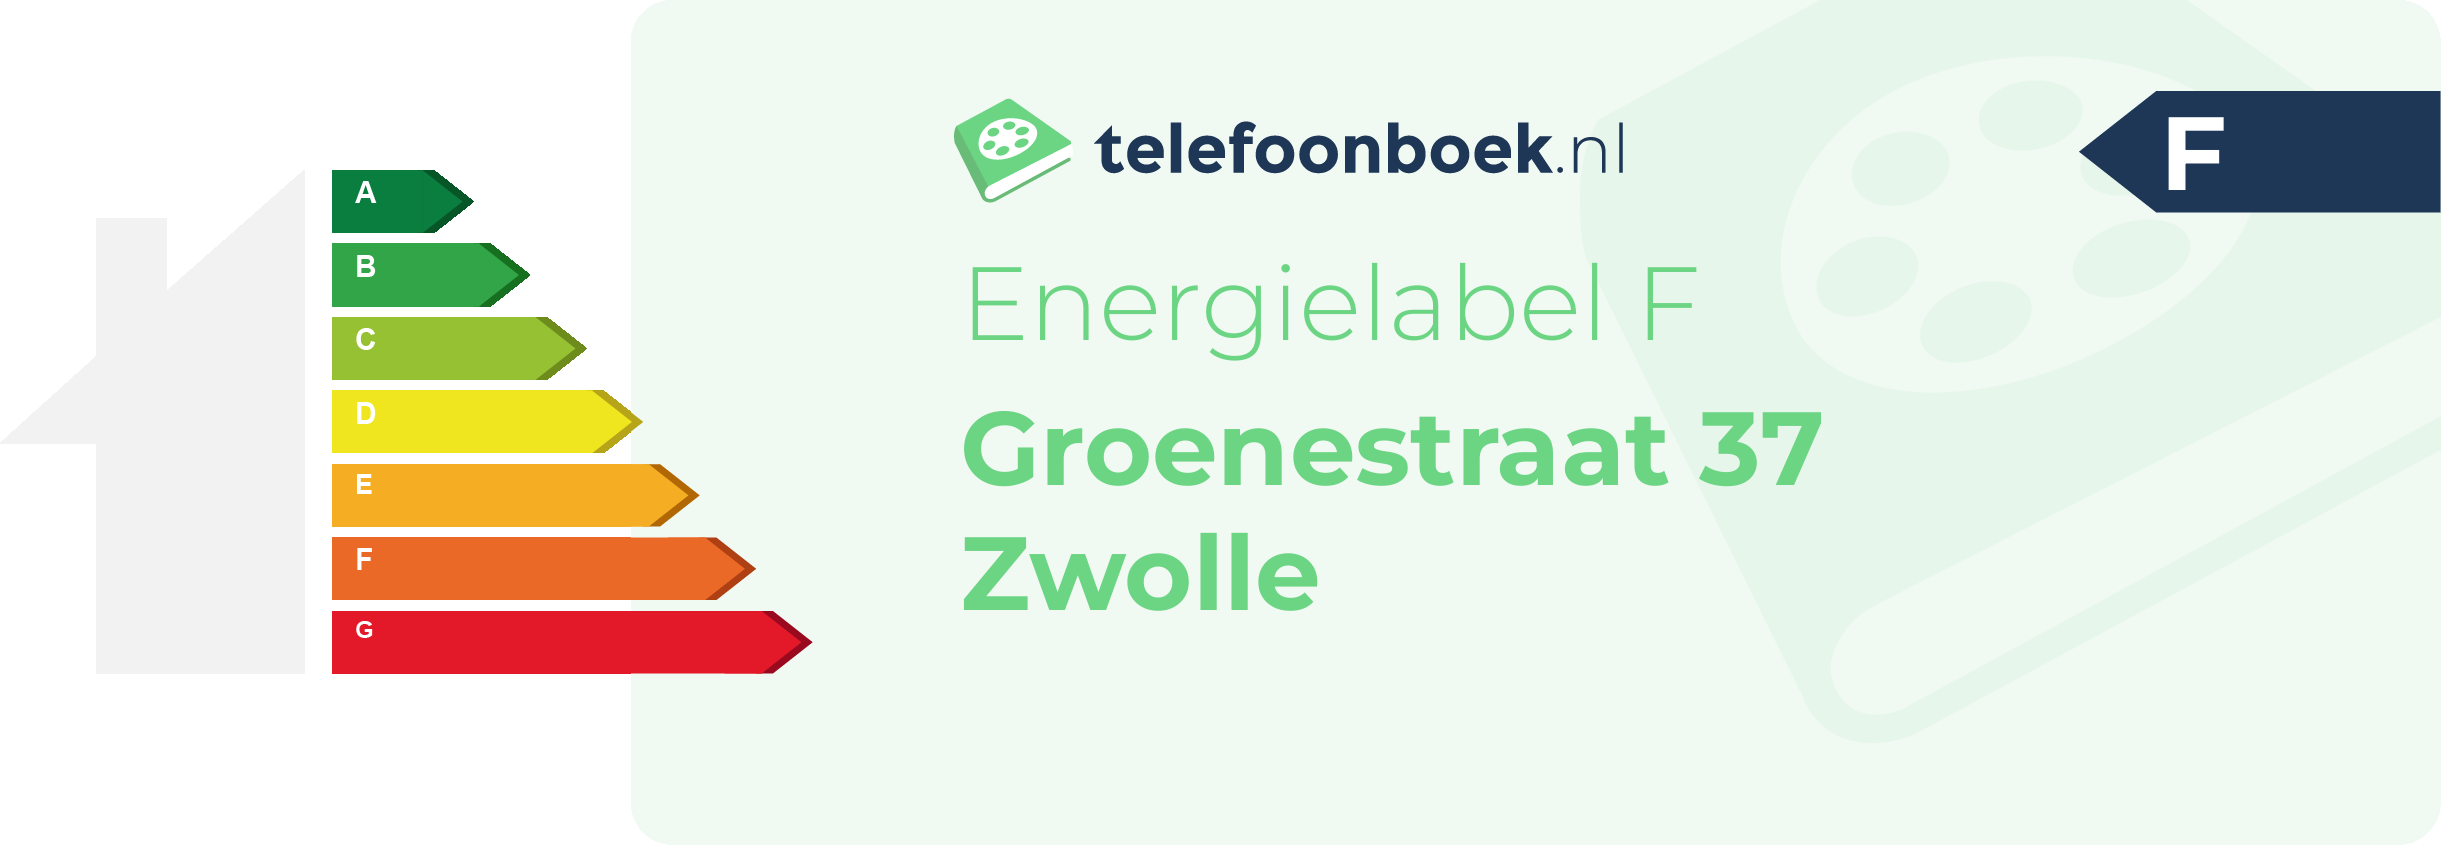 Energielabel Groenestraat 37 Zwolle